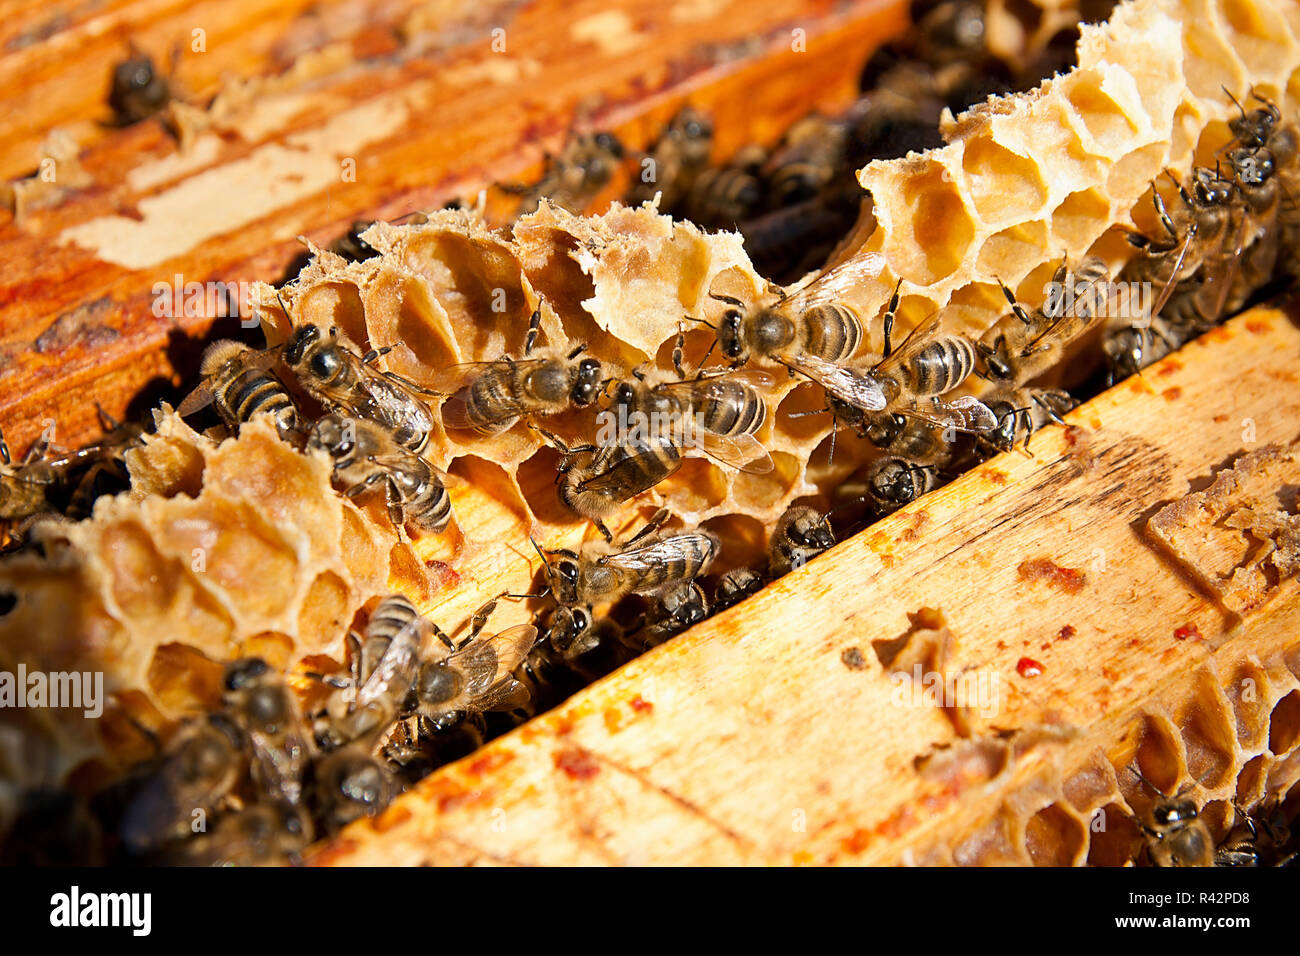 Les abeilles, voir le groupe de travail sur nid d'abeilles. Banque D'Images